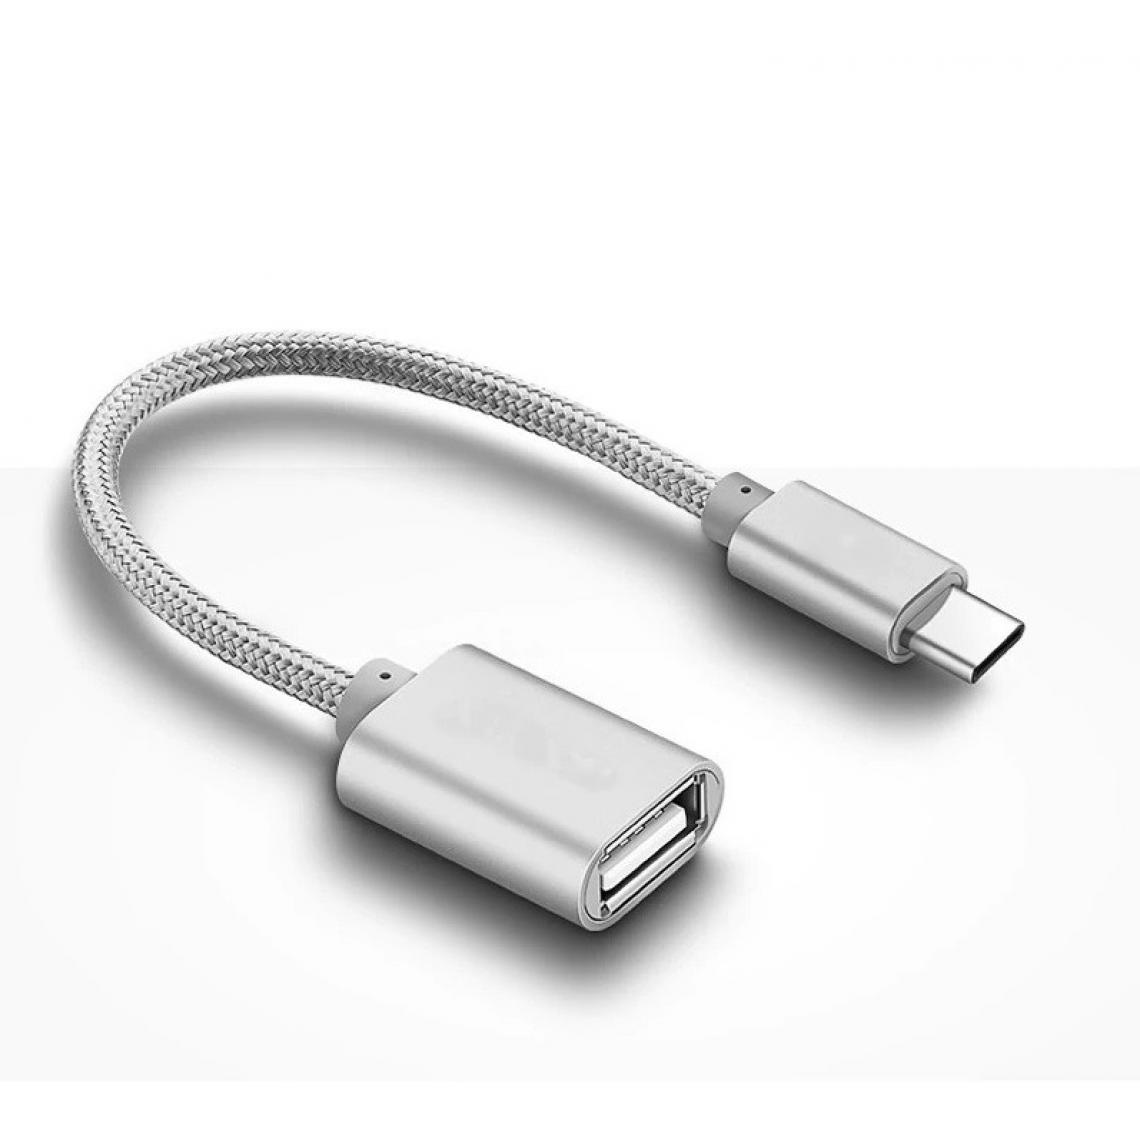 Shot - Adaptateur Type C/USB pour HUAWEI Mediapad M6 Smartphone & MAC USB-C Clef (ARGENT) - Autres accessoires smartphone